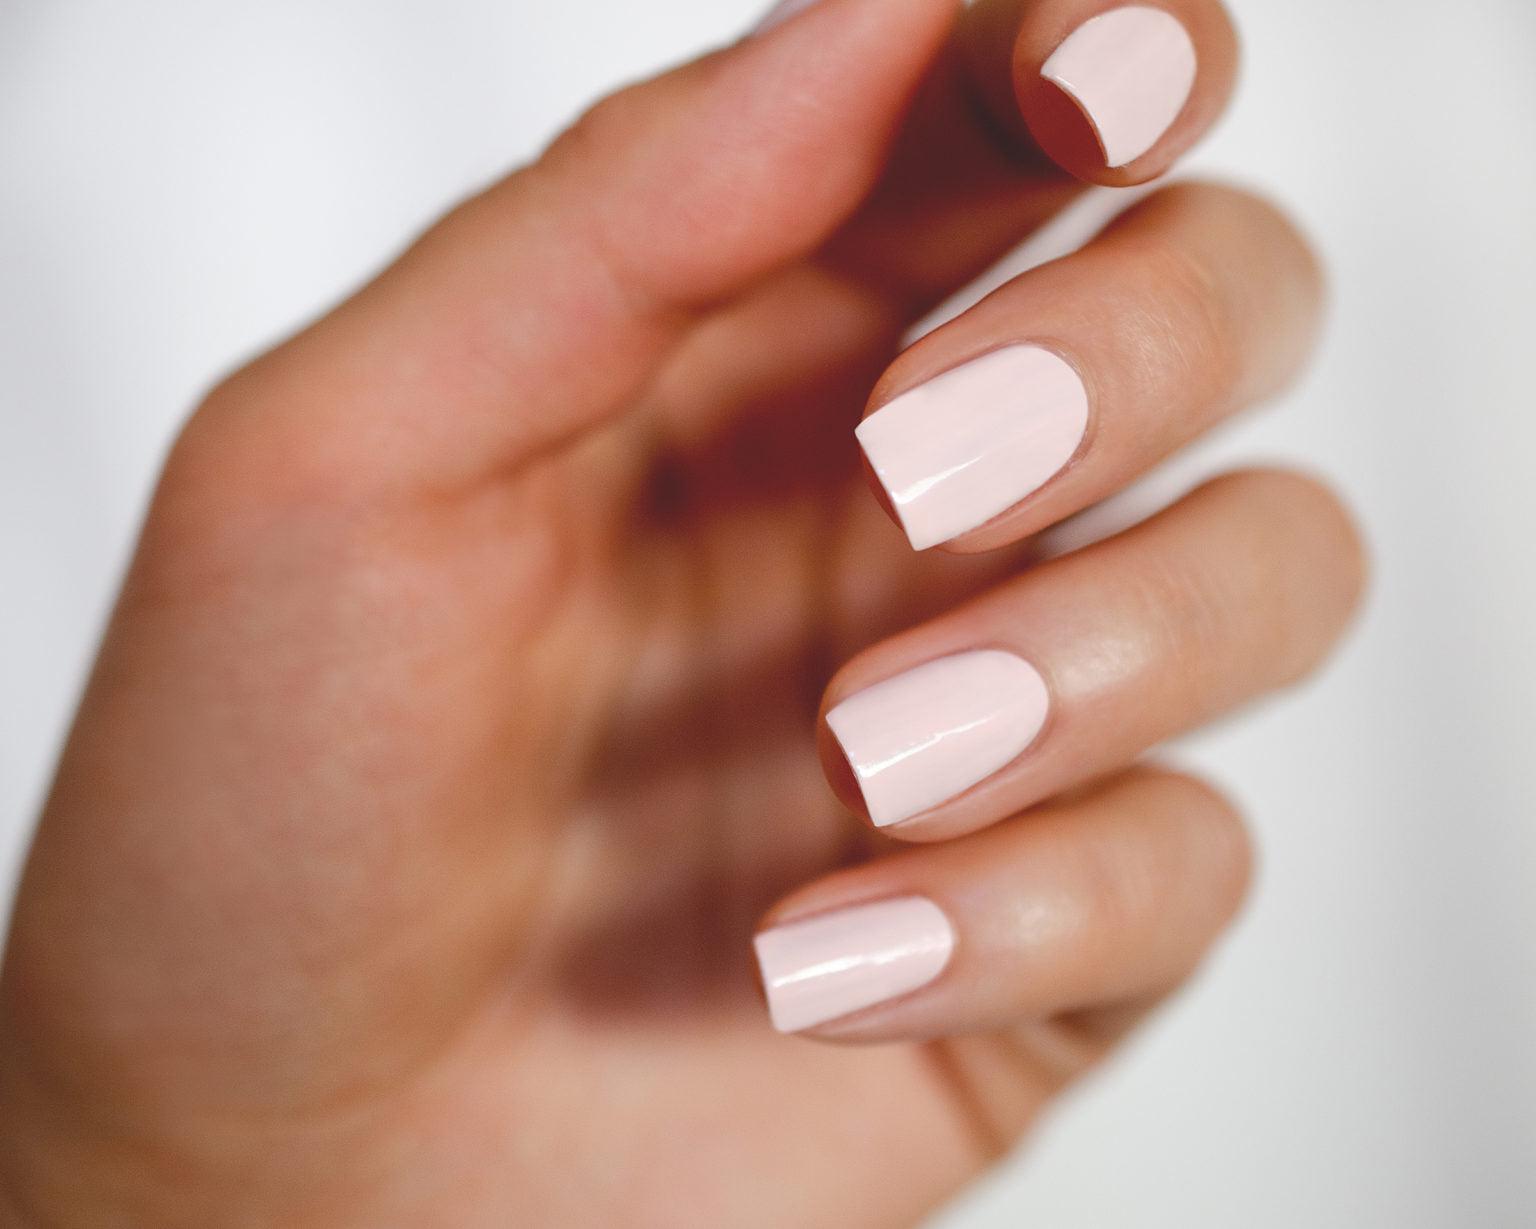 square nail shape with light pink nail polish